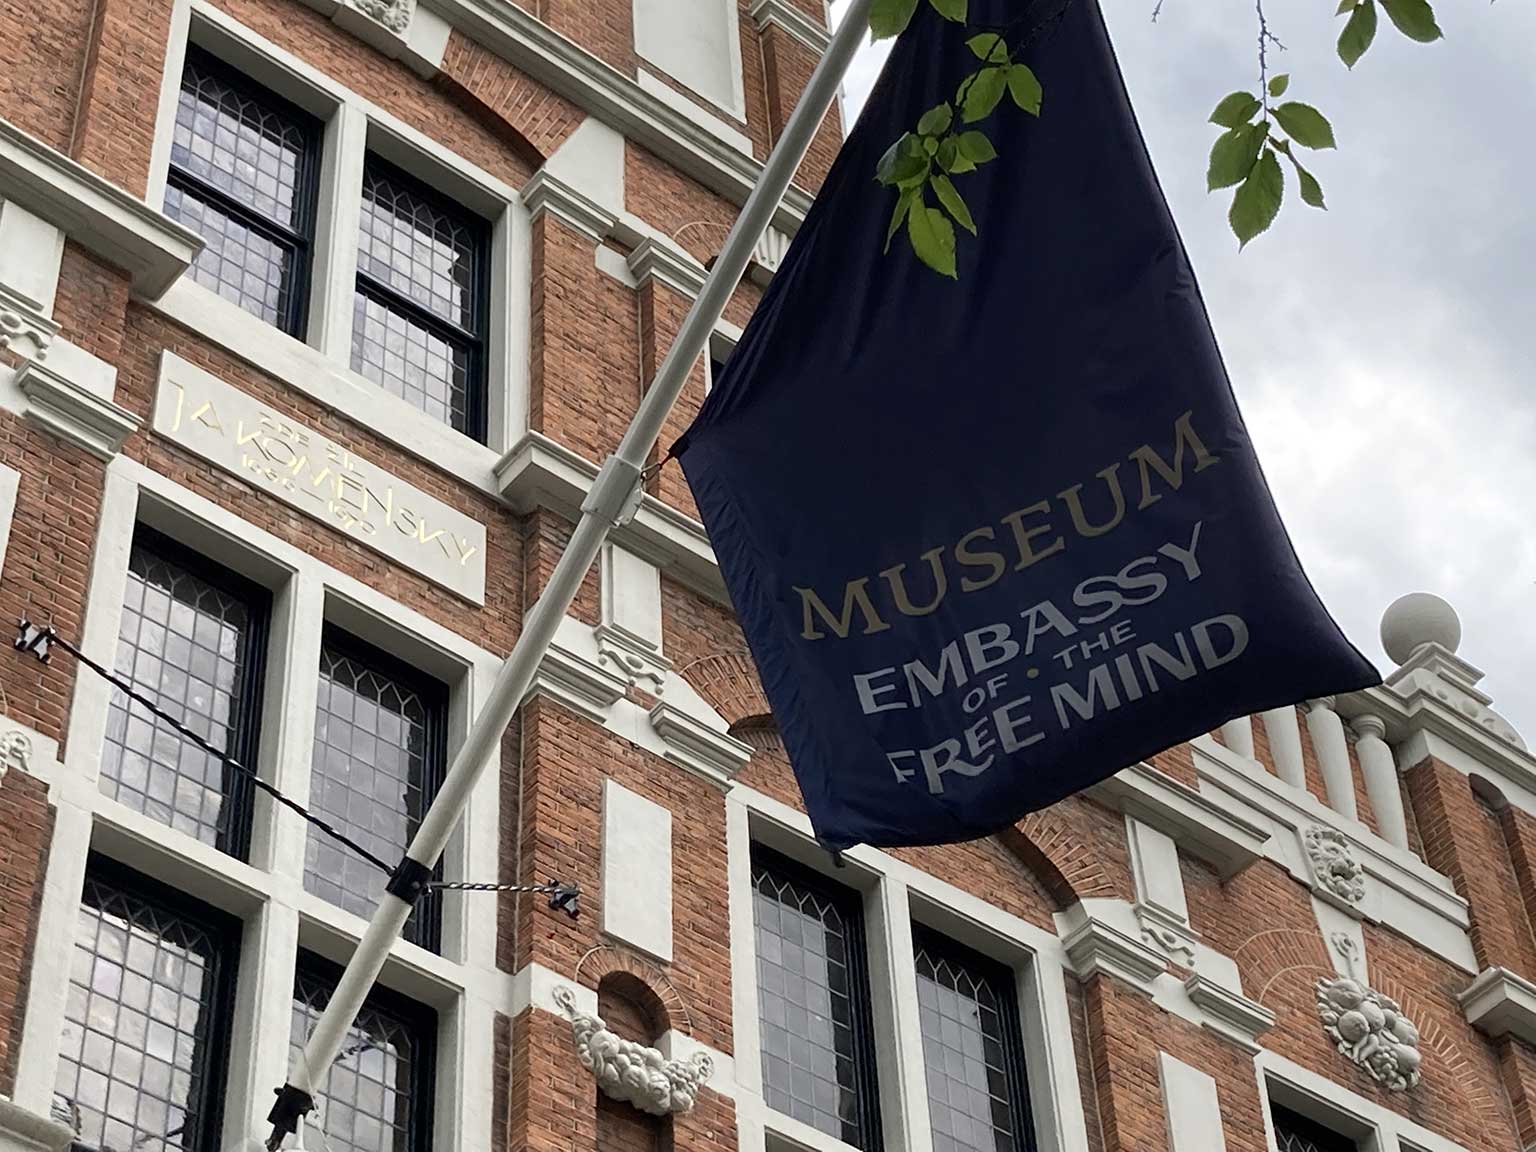 Huis met de Hoofden, Amsterdam, flag of Embassy of the Free Mind and plaque commemorating Comenius